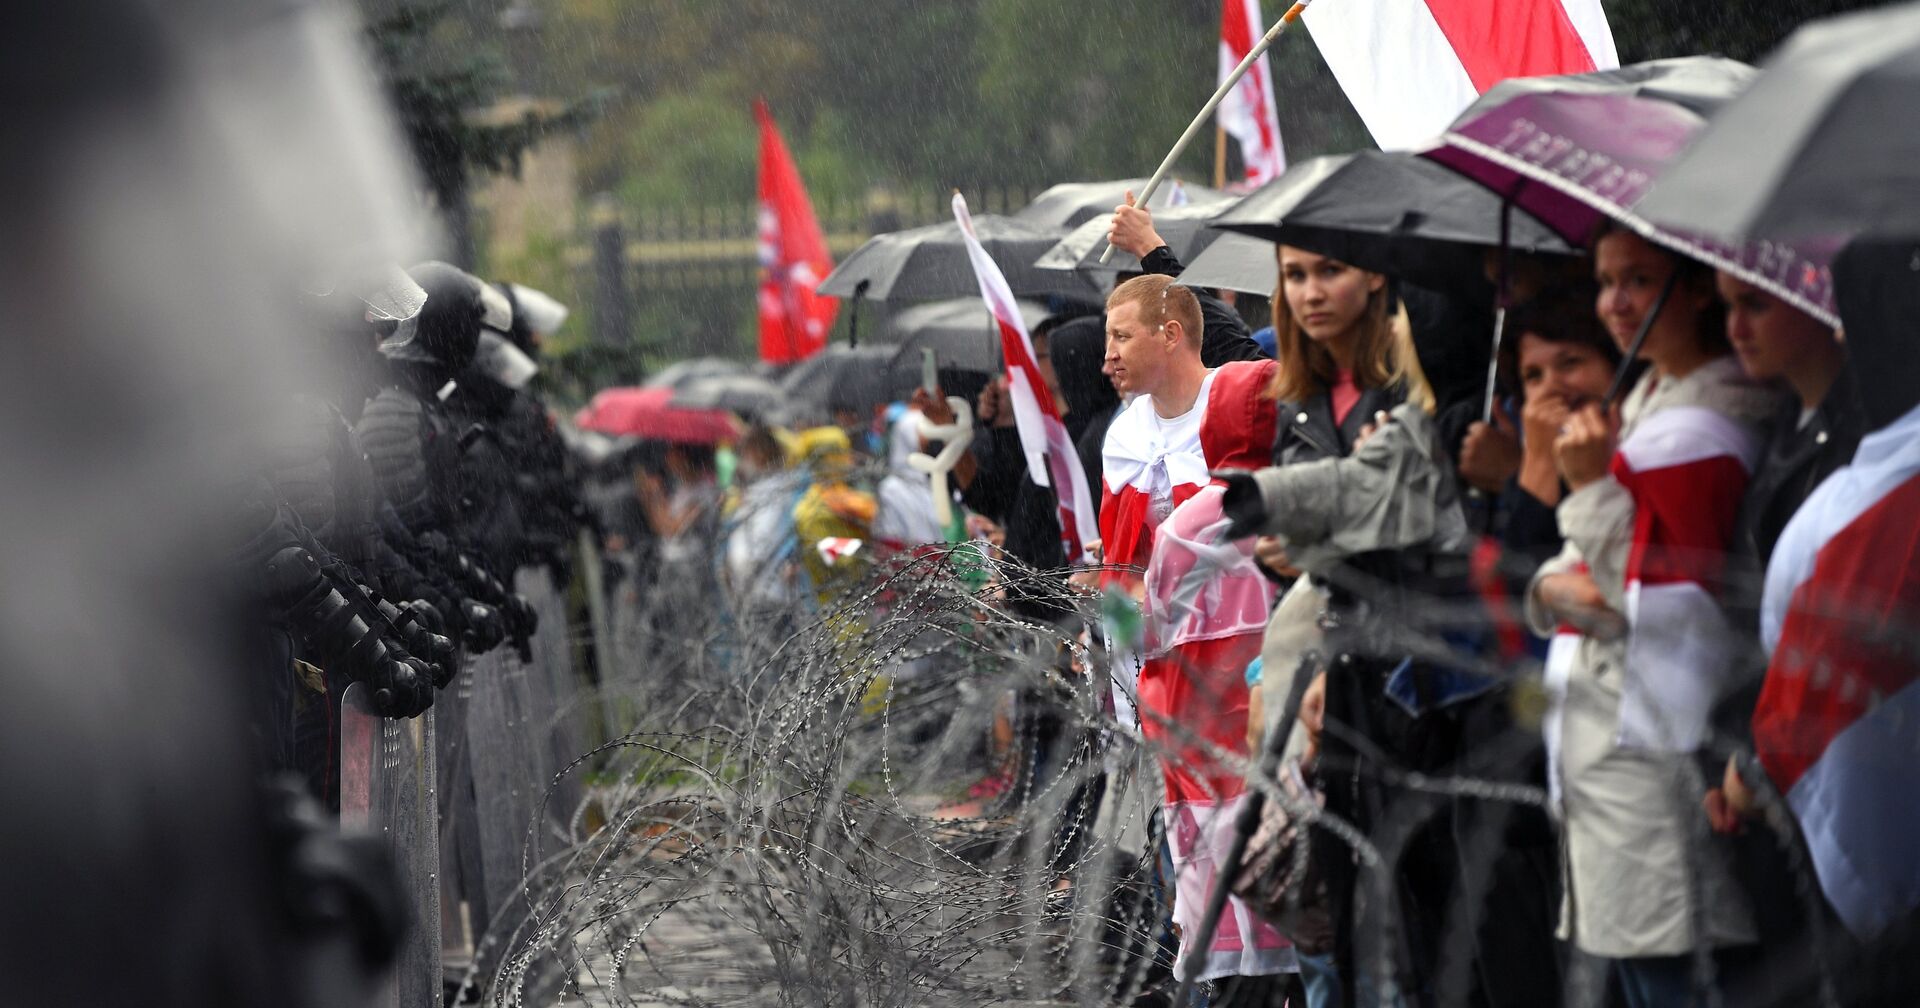 Участники несанкционированной акции оппозиции Марш единства и сотрудники милиции на одной из улиц в Минске - ИноСМИ, 1920, 14.09.2020